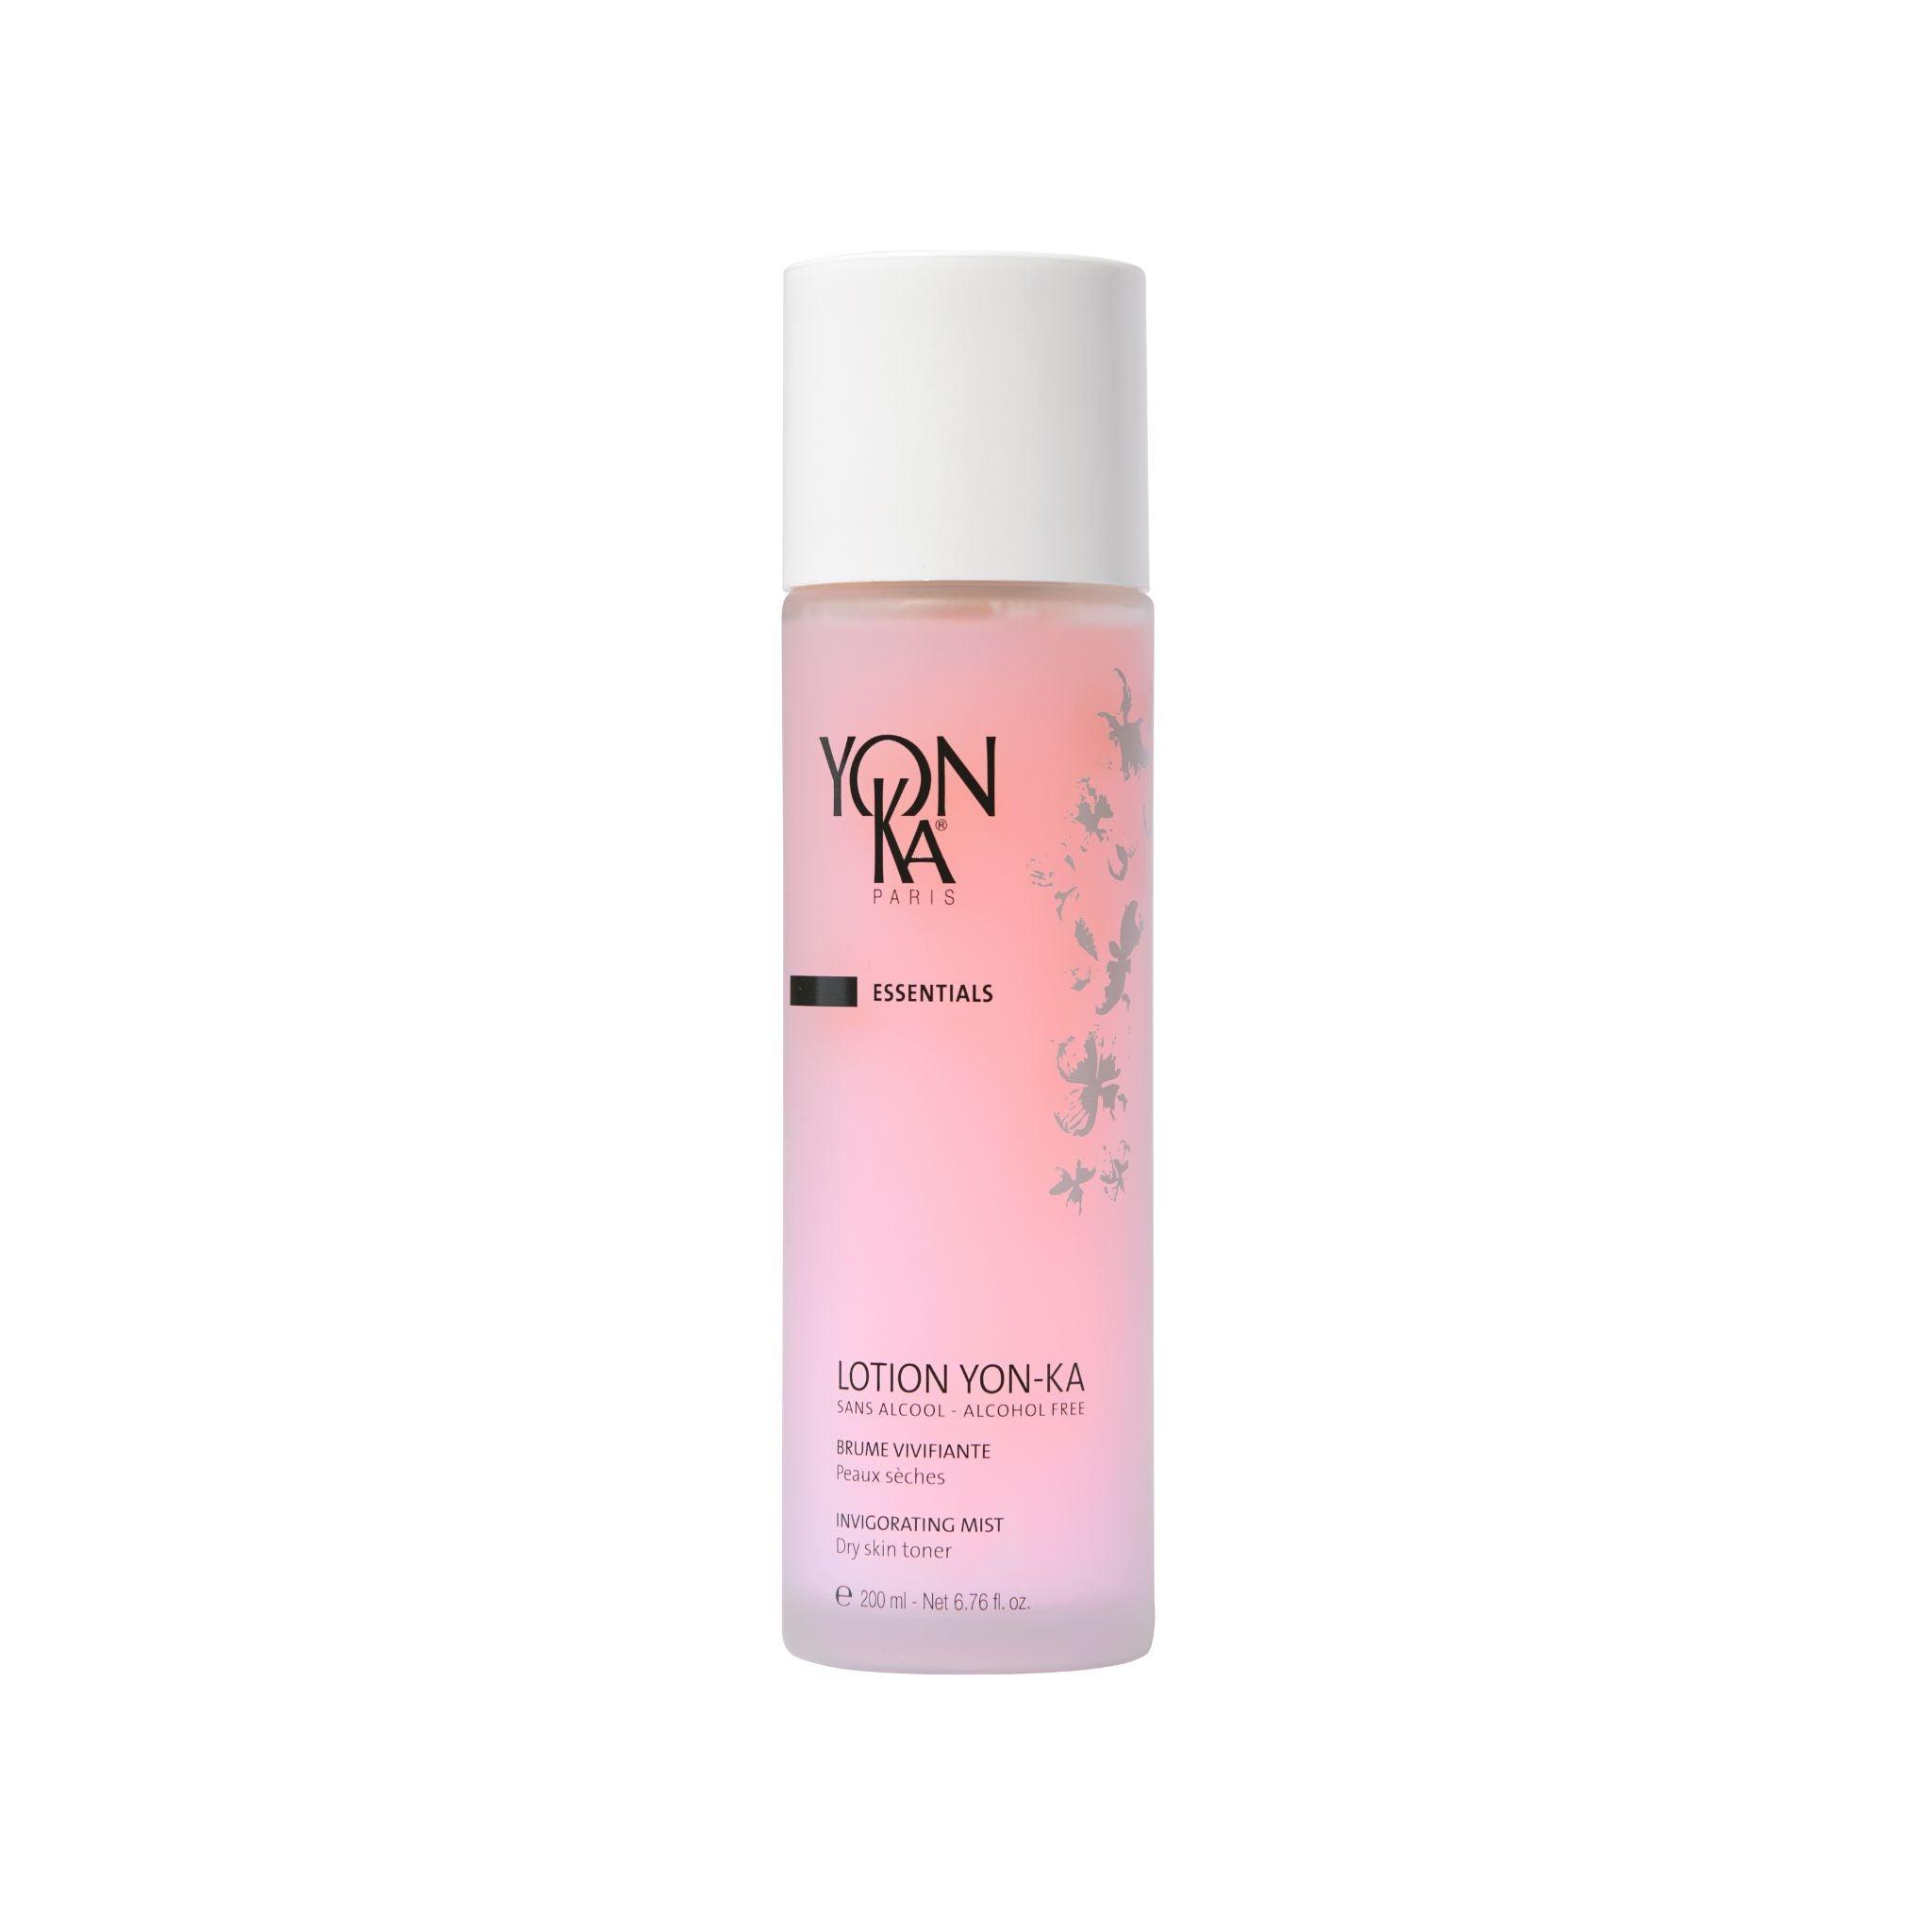 YonKa Lotion Yon-Ka Mist - Dry Skin - The Beauty House Shop